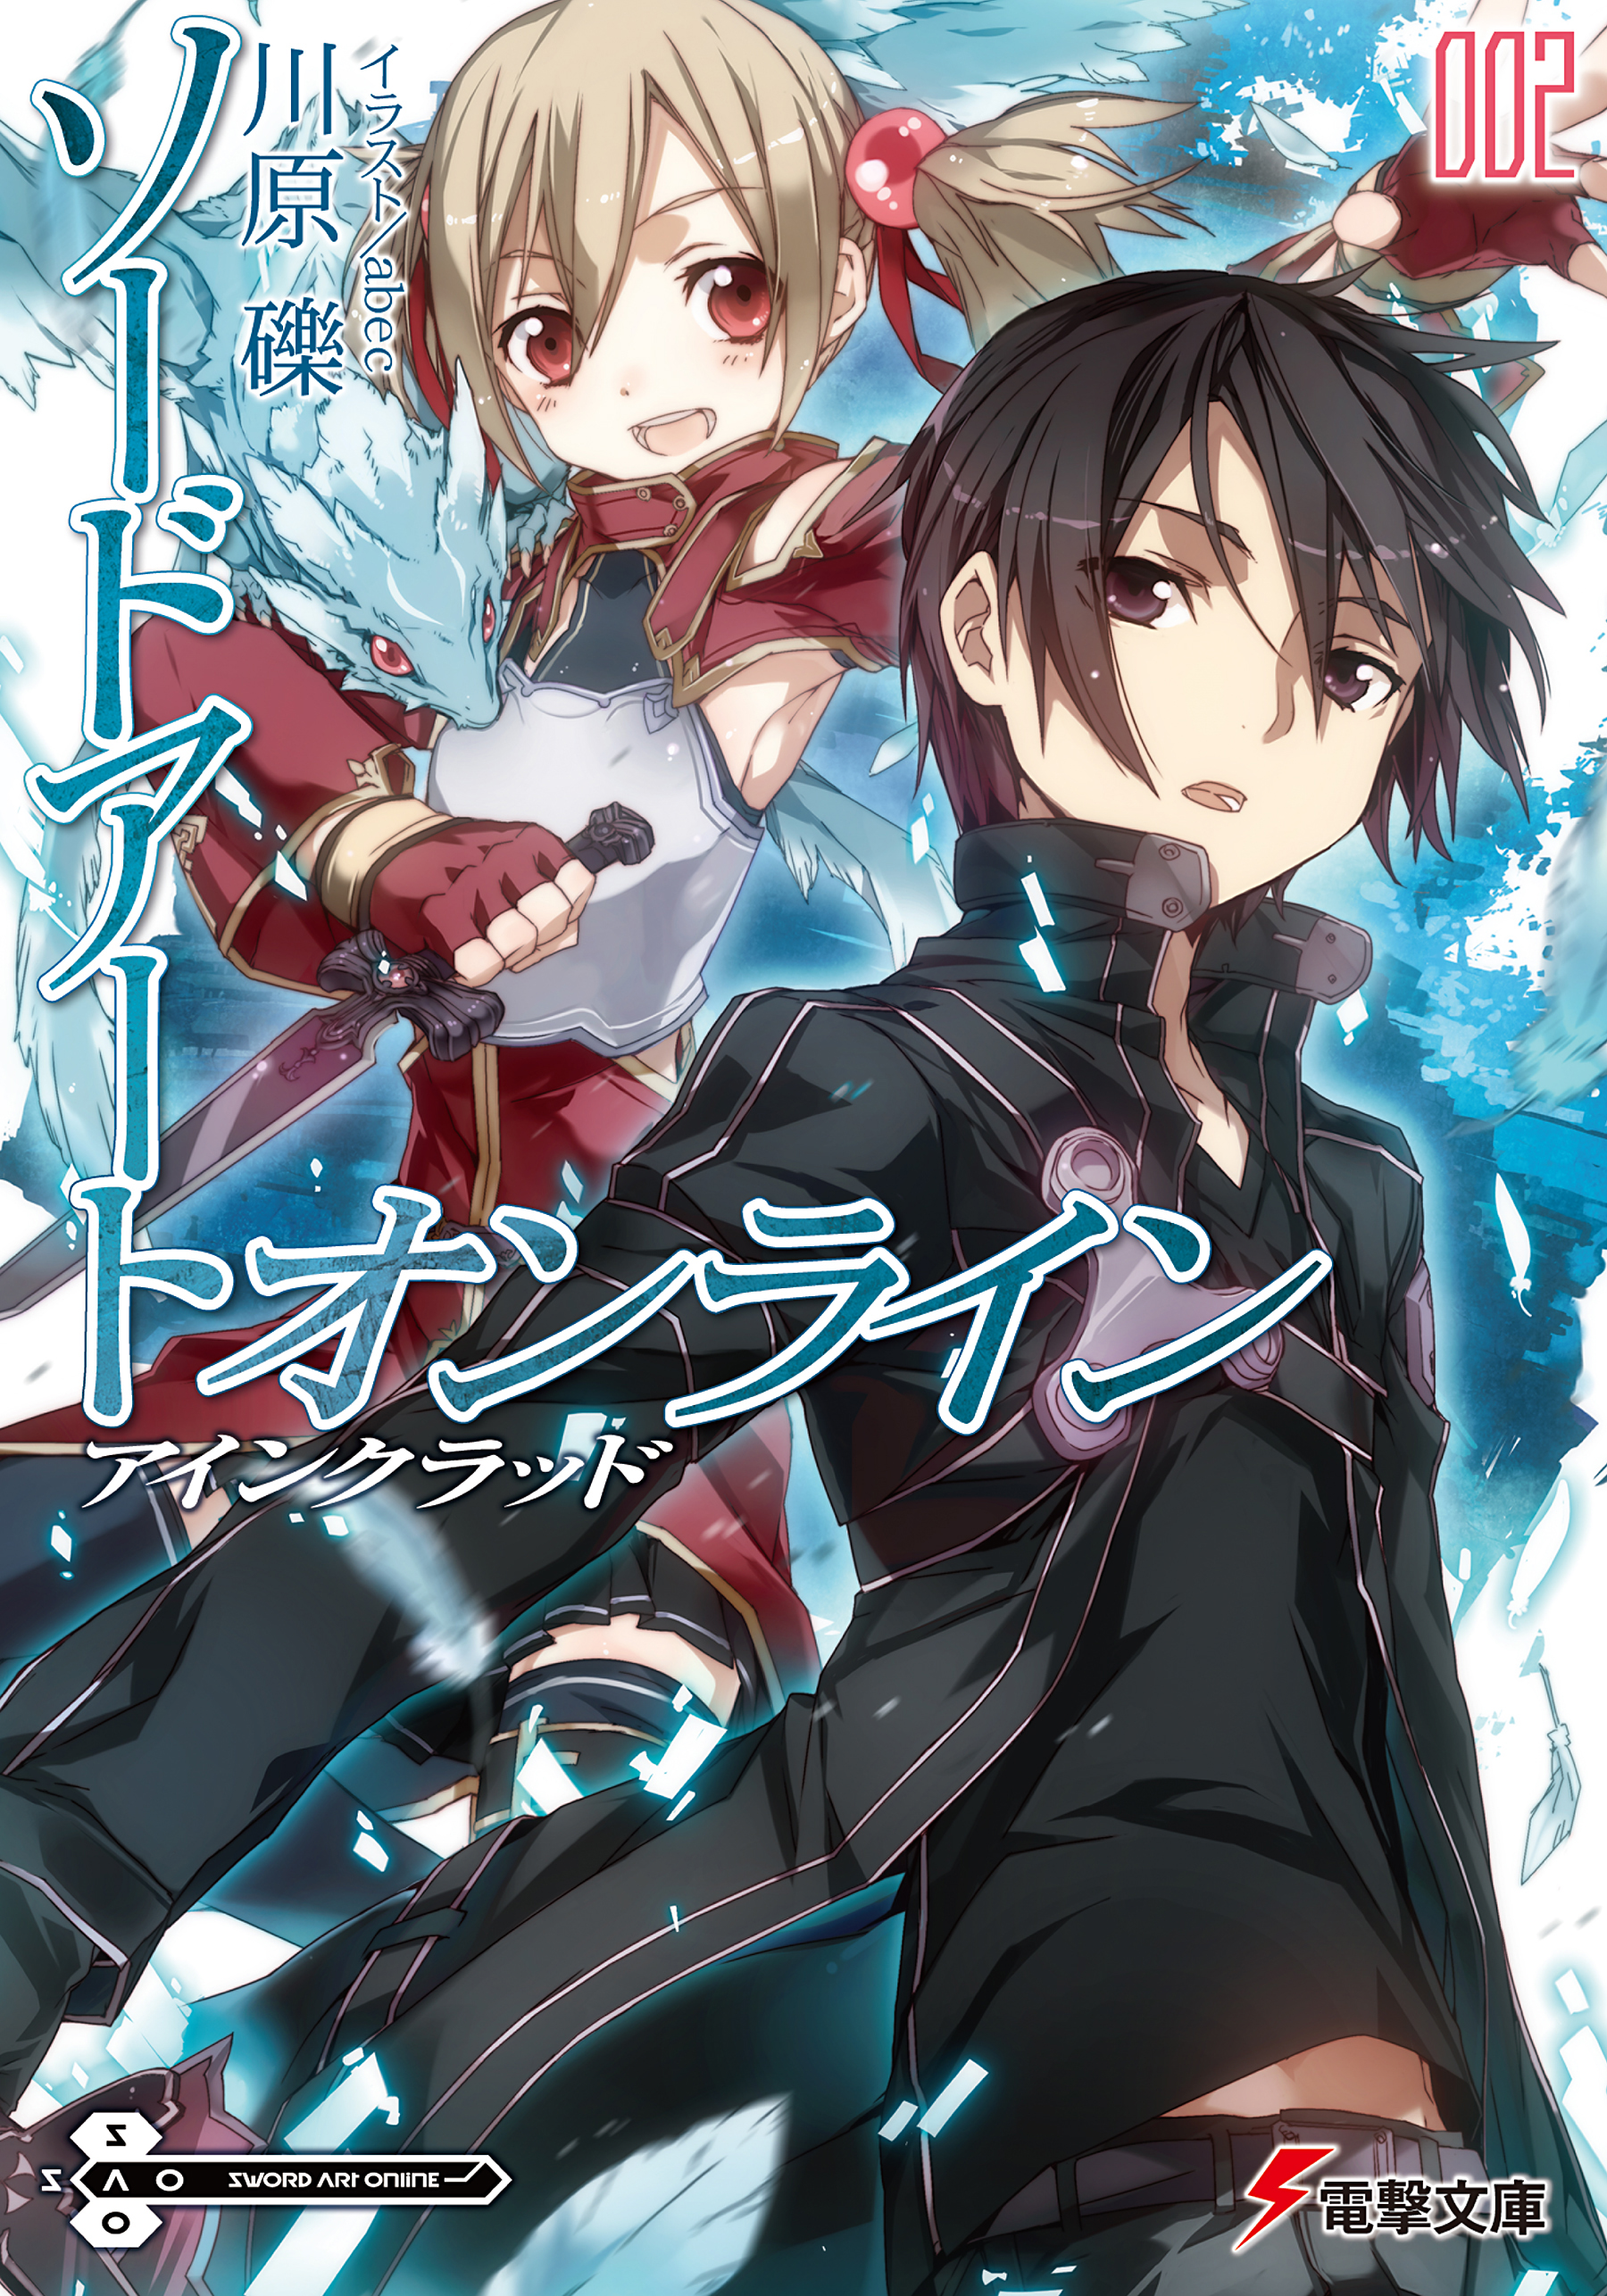 Sword Art Online Light Novel Volume 02 Sword Art Online Wiki Fandom